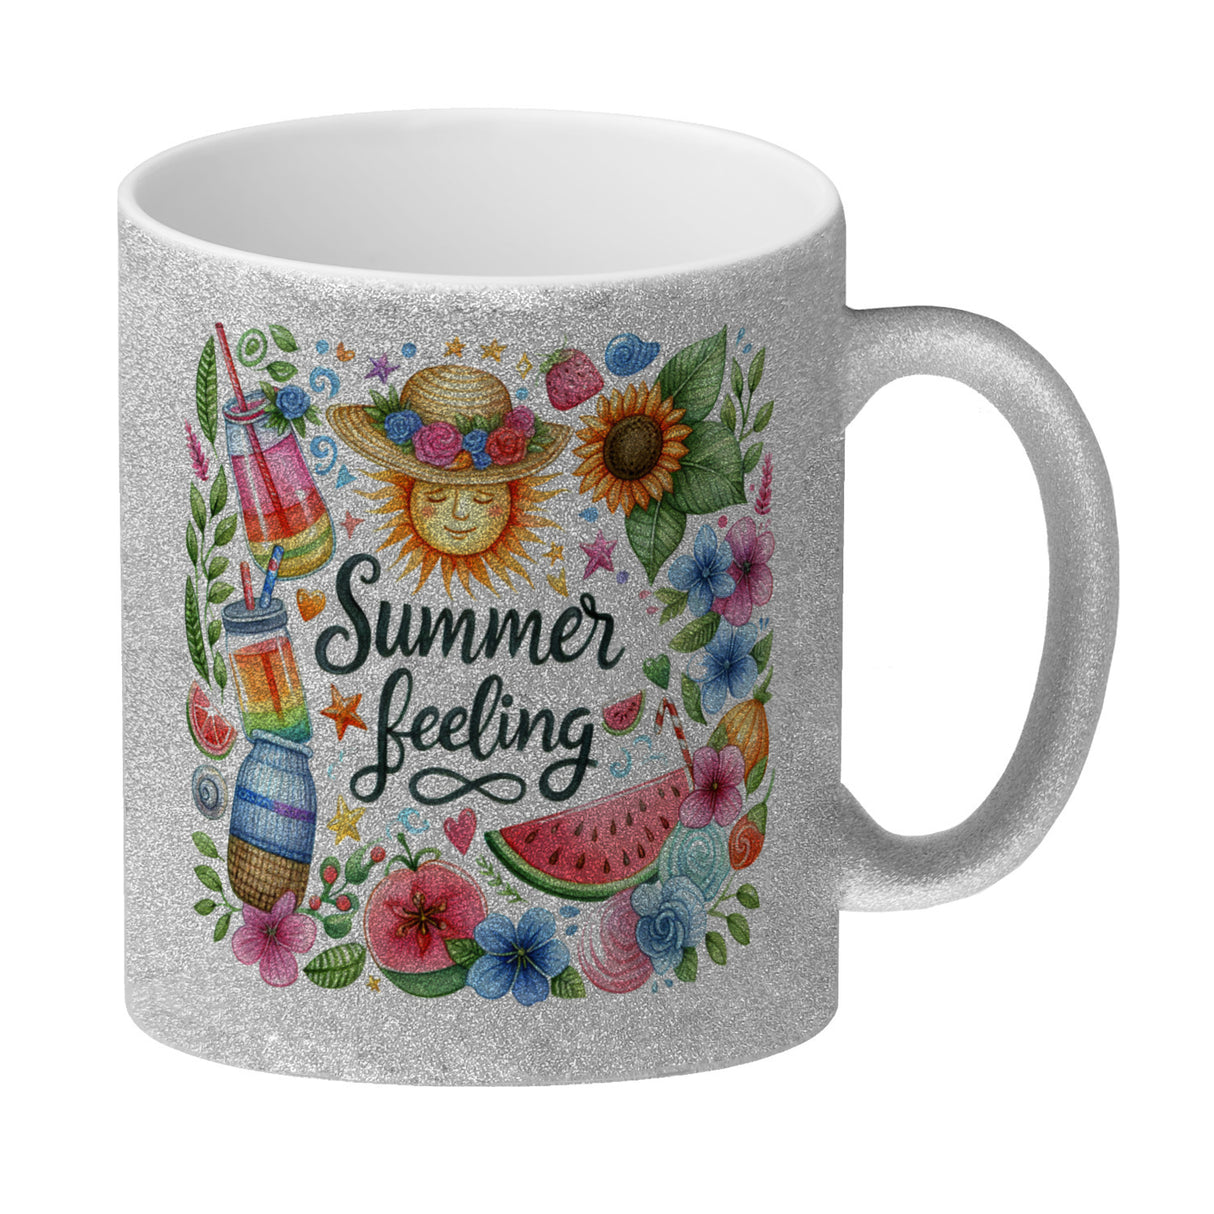 Sonne und Sommer Kaffeebecher mit Spruch Summer feeling